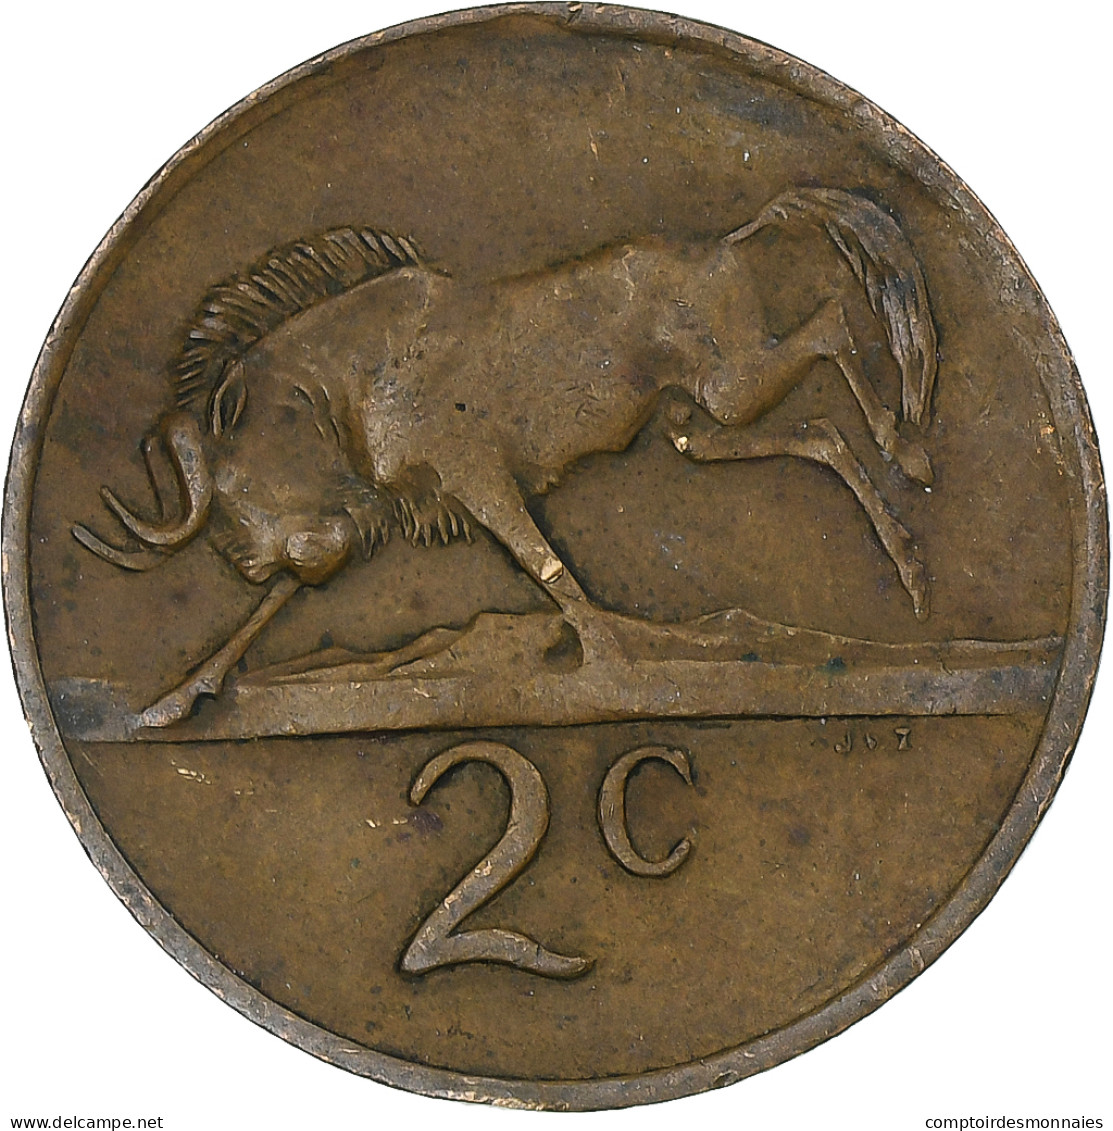 Afrique Du Sud, 2 Cents, 1975 - Südafrika